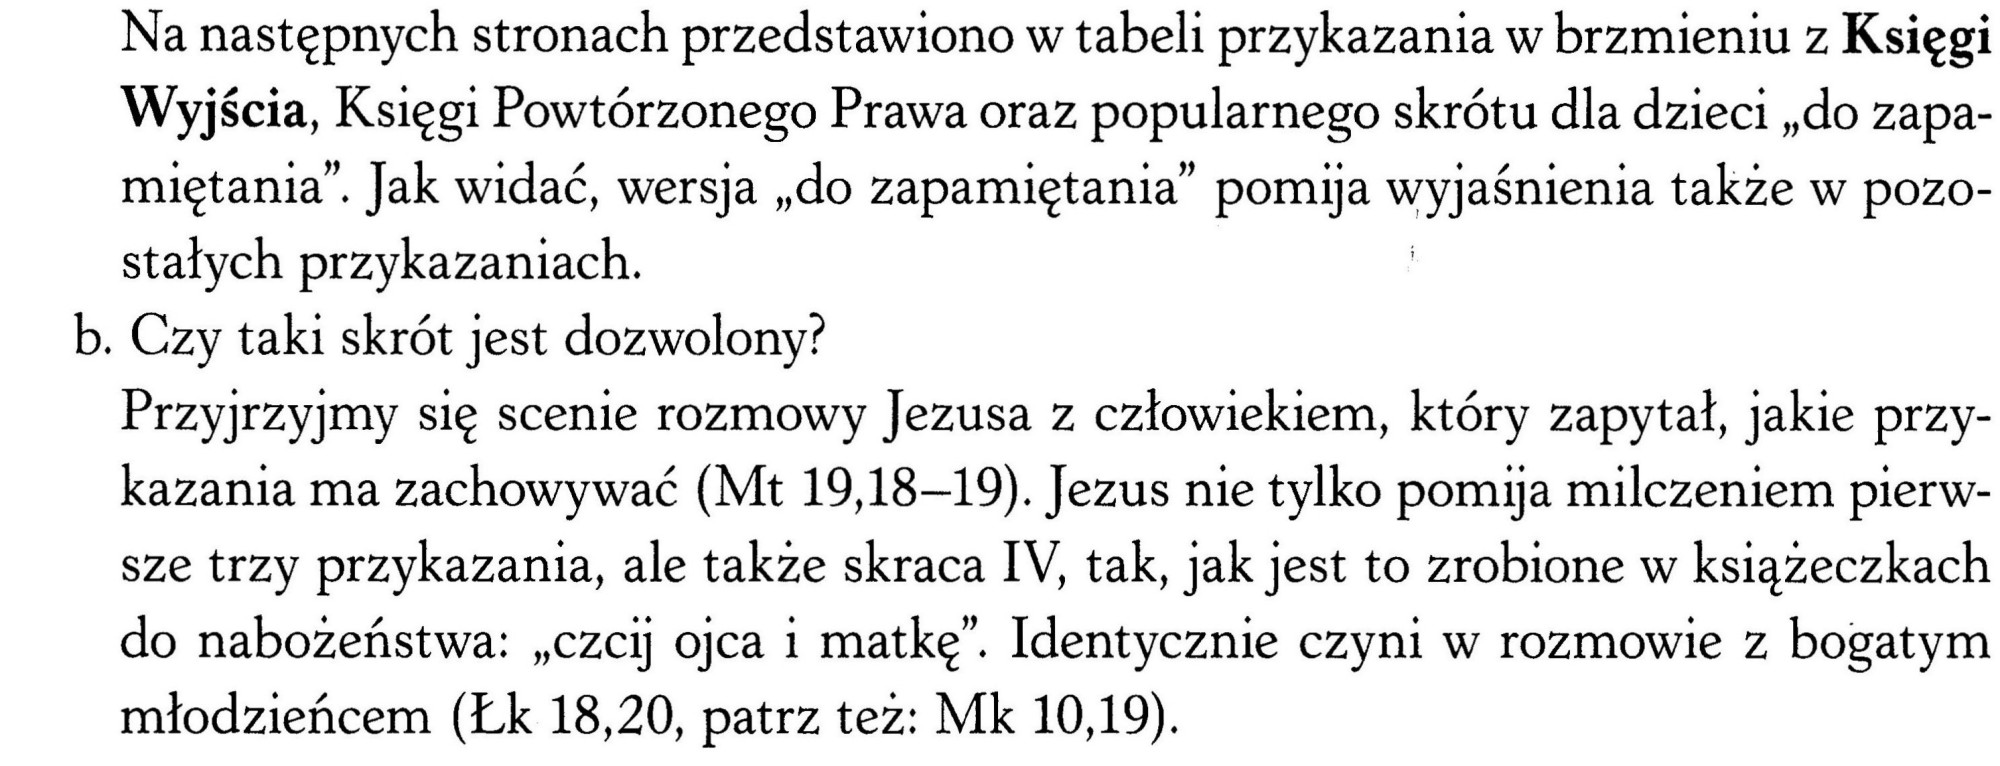 Marek Piotrowski, Dlaczego ufam Kościołowi